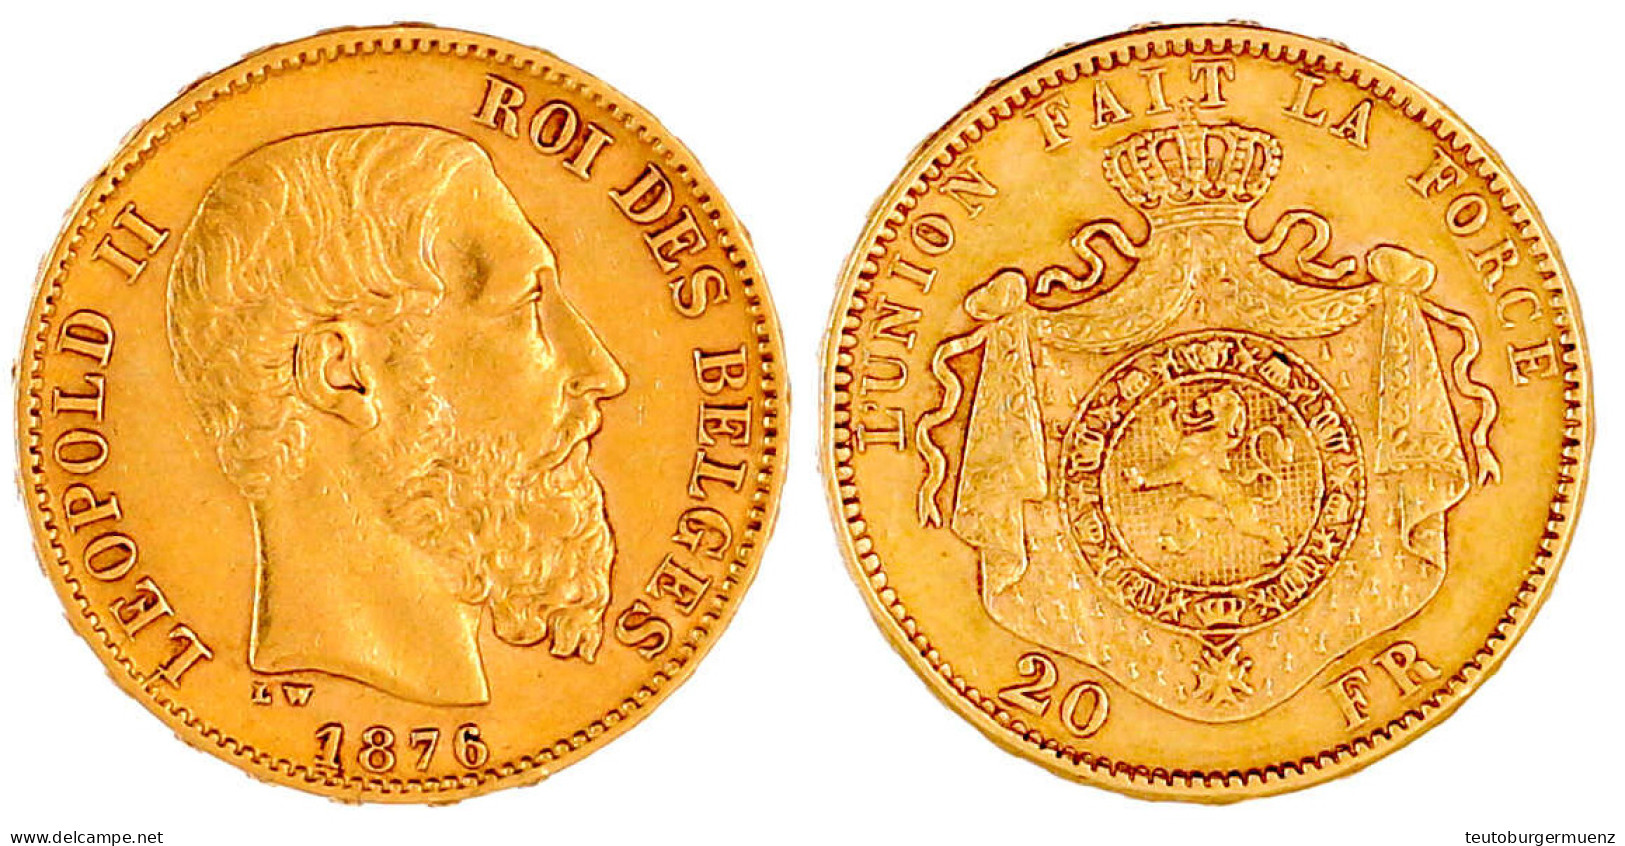 20 Francs 1876. Pos. A. 6,45 G. 900/1000. Vorzüglich. Krause/Mishler 37. - 20 Frank (gold)